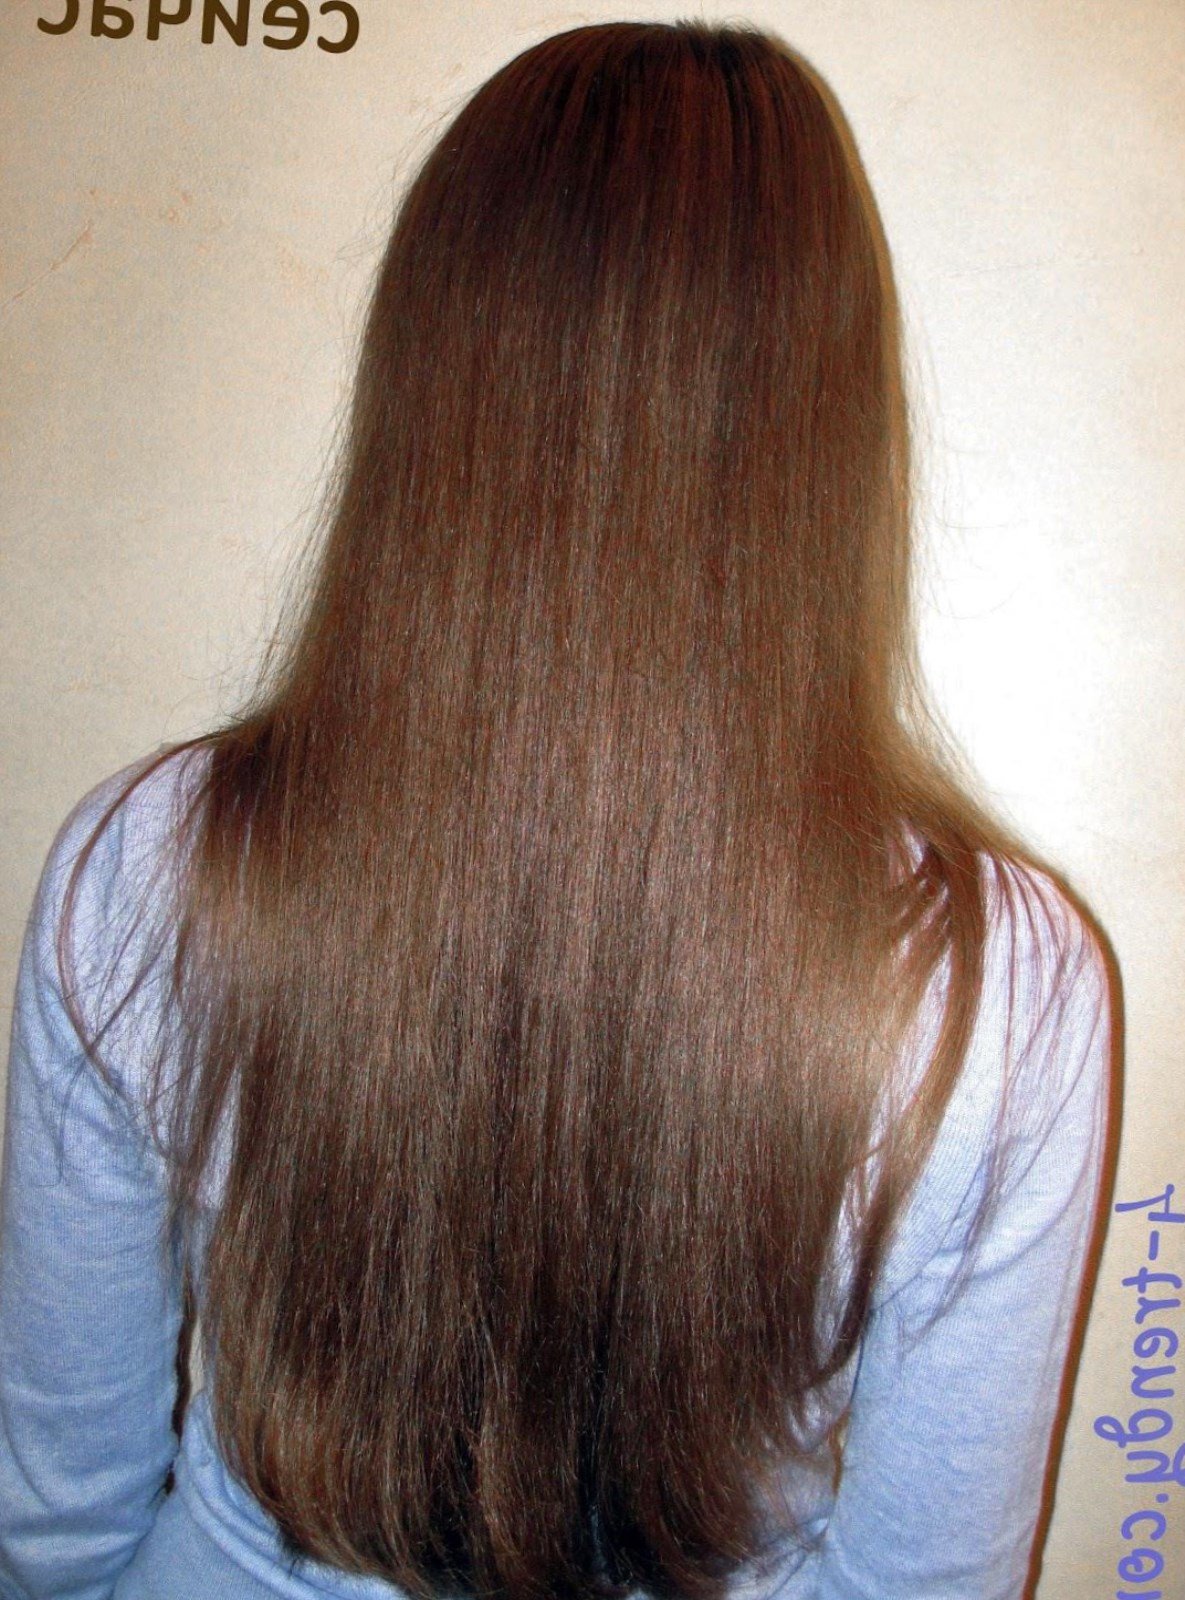 Як відростити довгі волосся